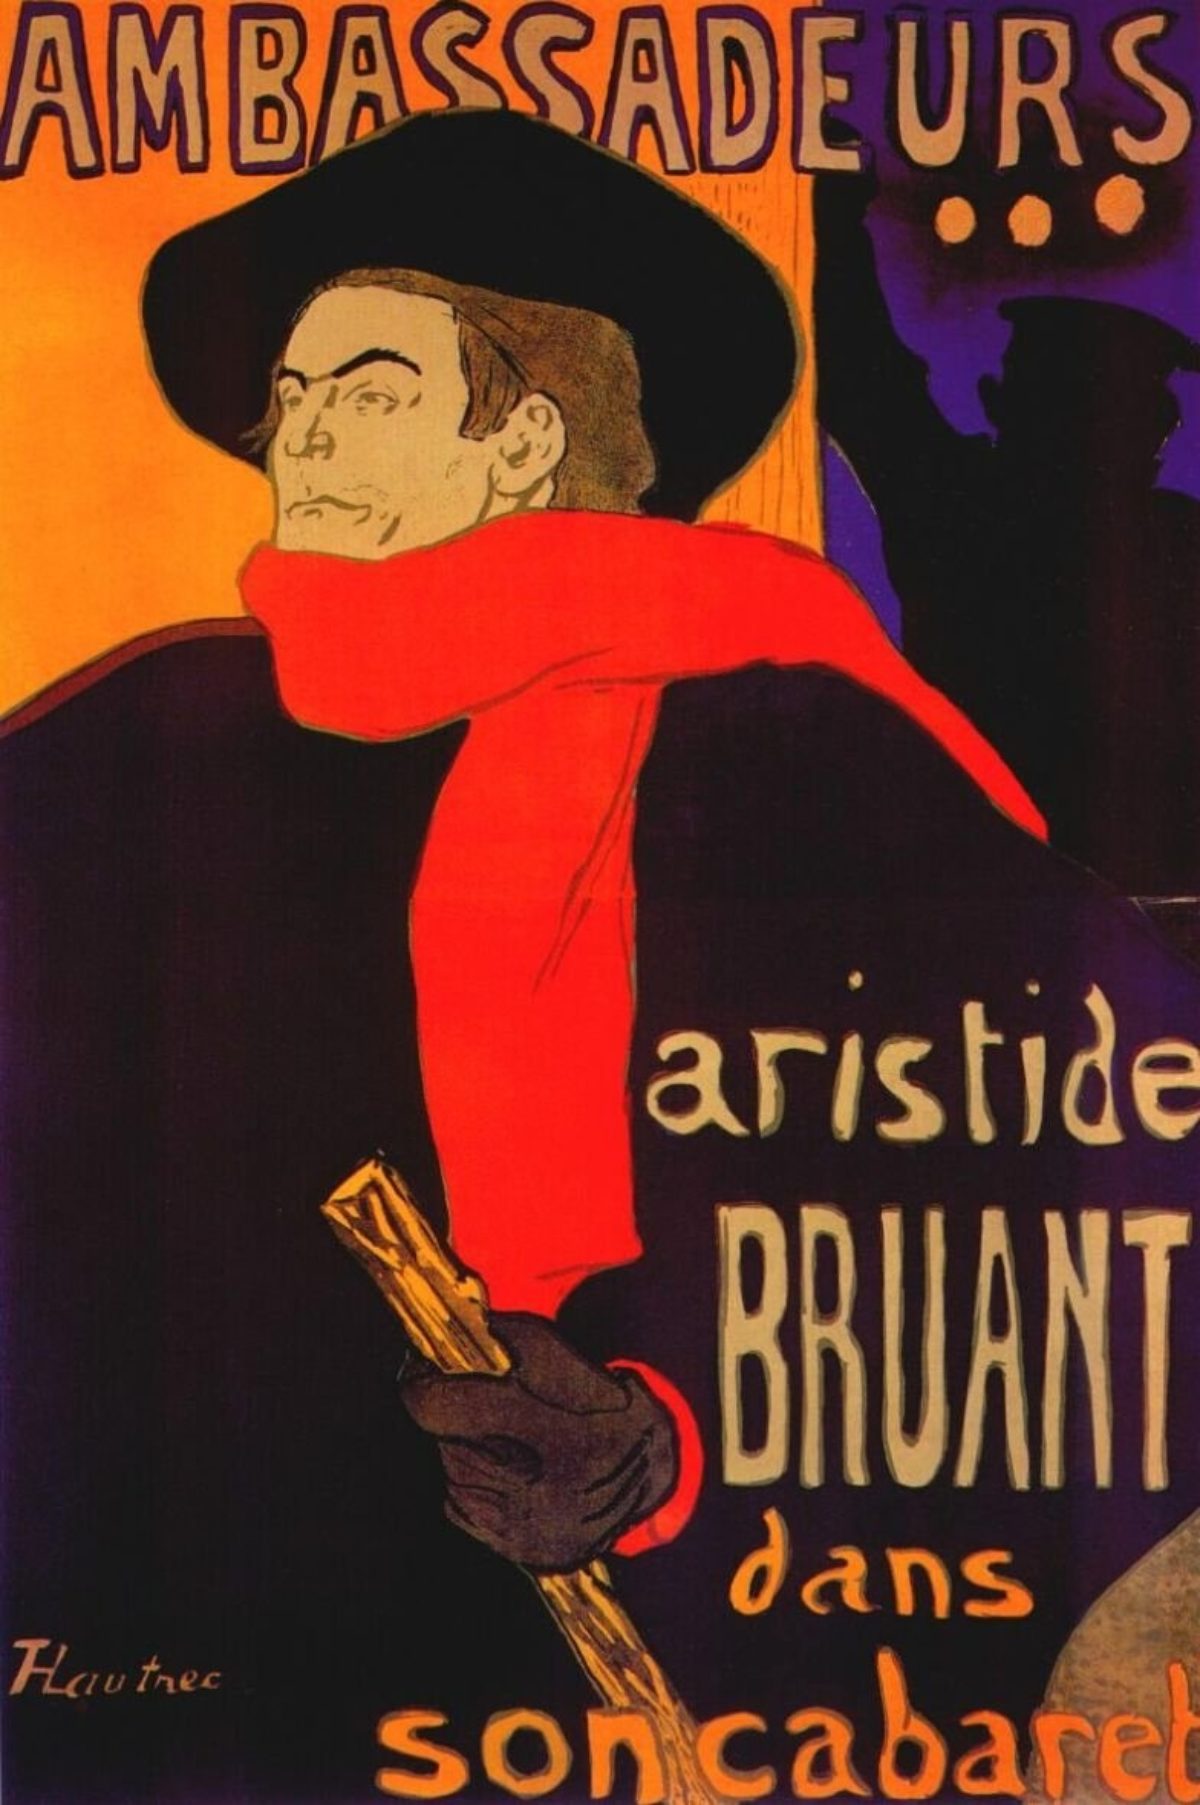 4-Lautrec_ambassadeurs_aristide_bruant_poster_1892